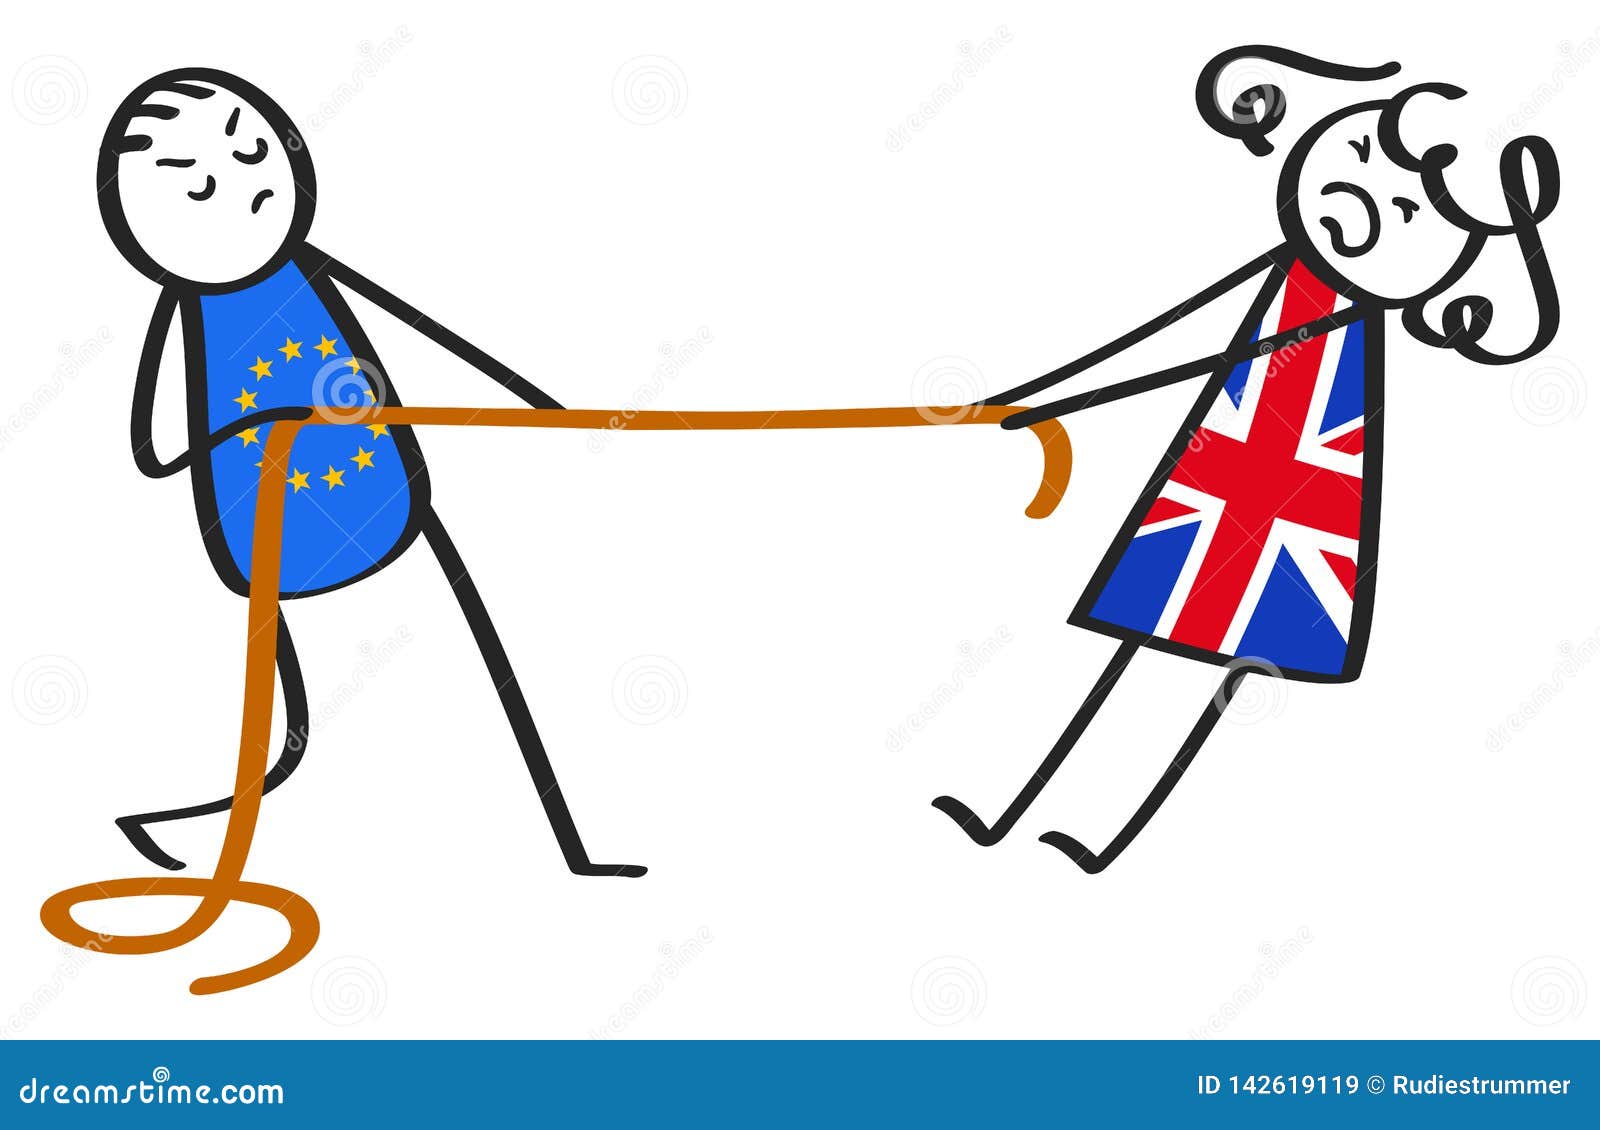 Esfuerzo supremo de Brexit entre UE y Gran Bretaña, figuras del palillo, hombre y mujer, metáfora, aislada en el fondo blanco